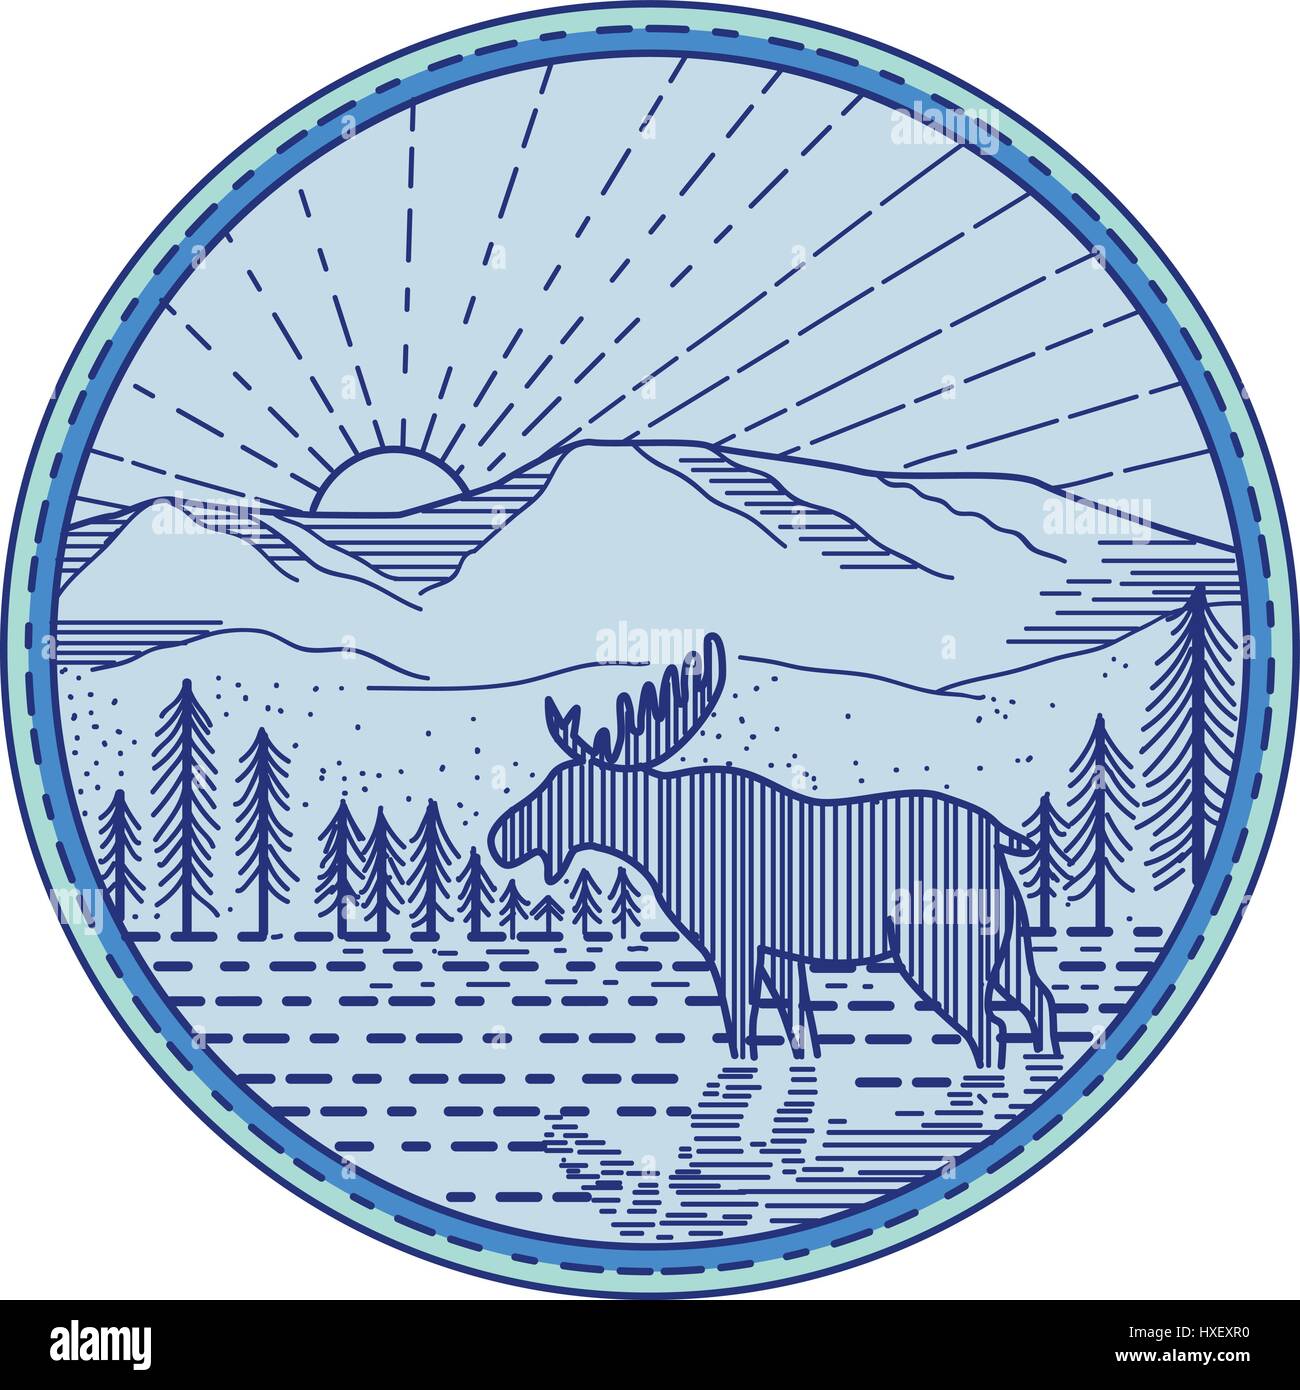 Mono stile linea illustrazione di un alce visto dal lato con il fiume, piana e montagna sunburst in background impostata all'interno del cerchio. Illustrazione Vettoriale